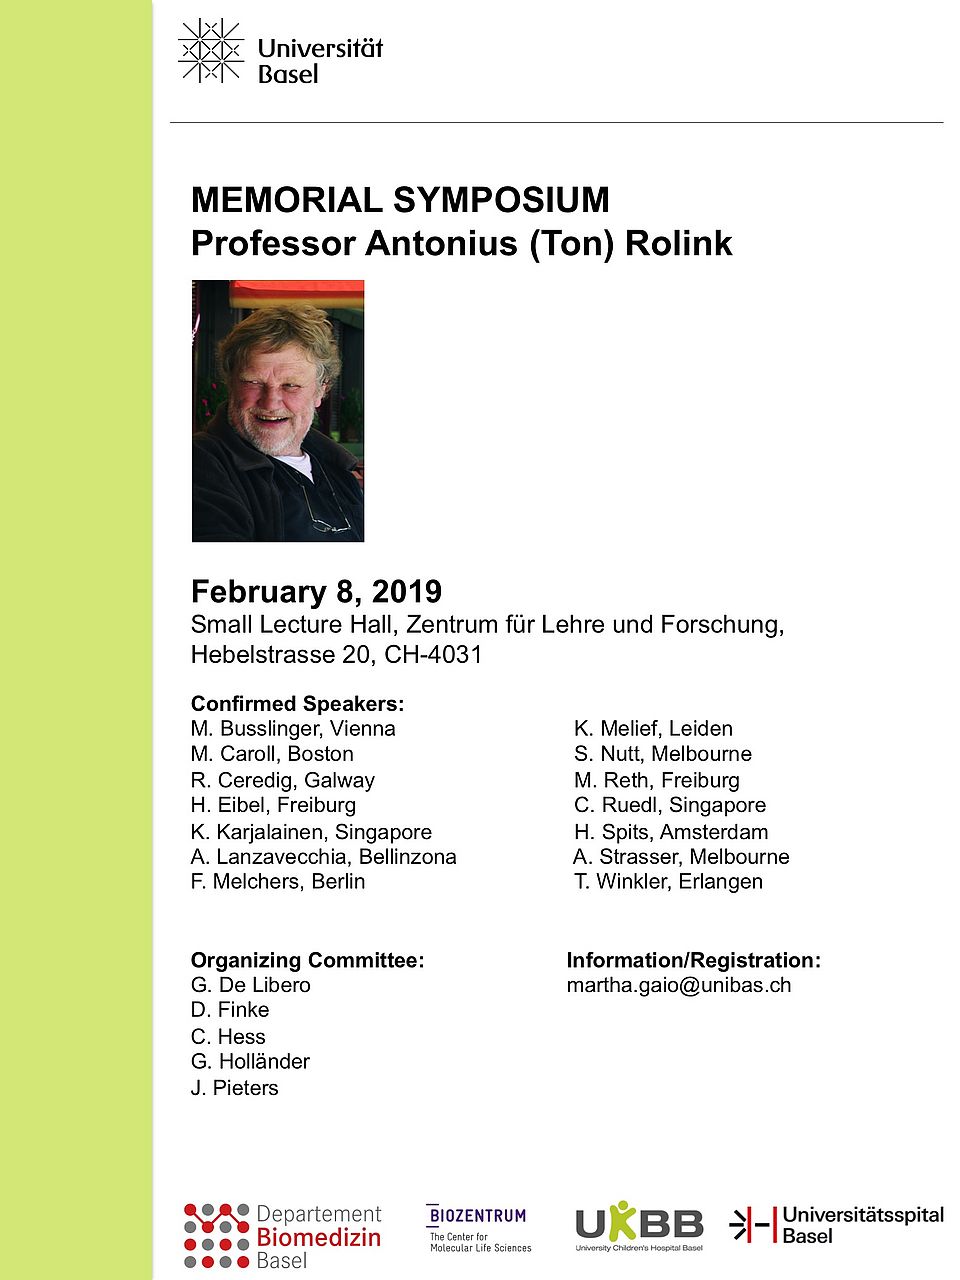 Memorial Symposium Ton Rolink